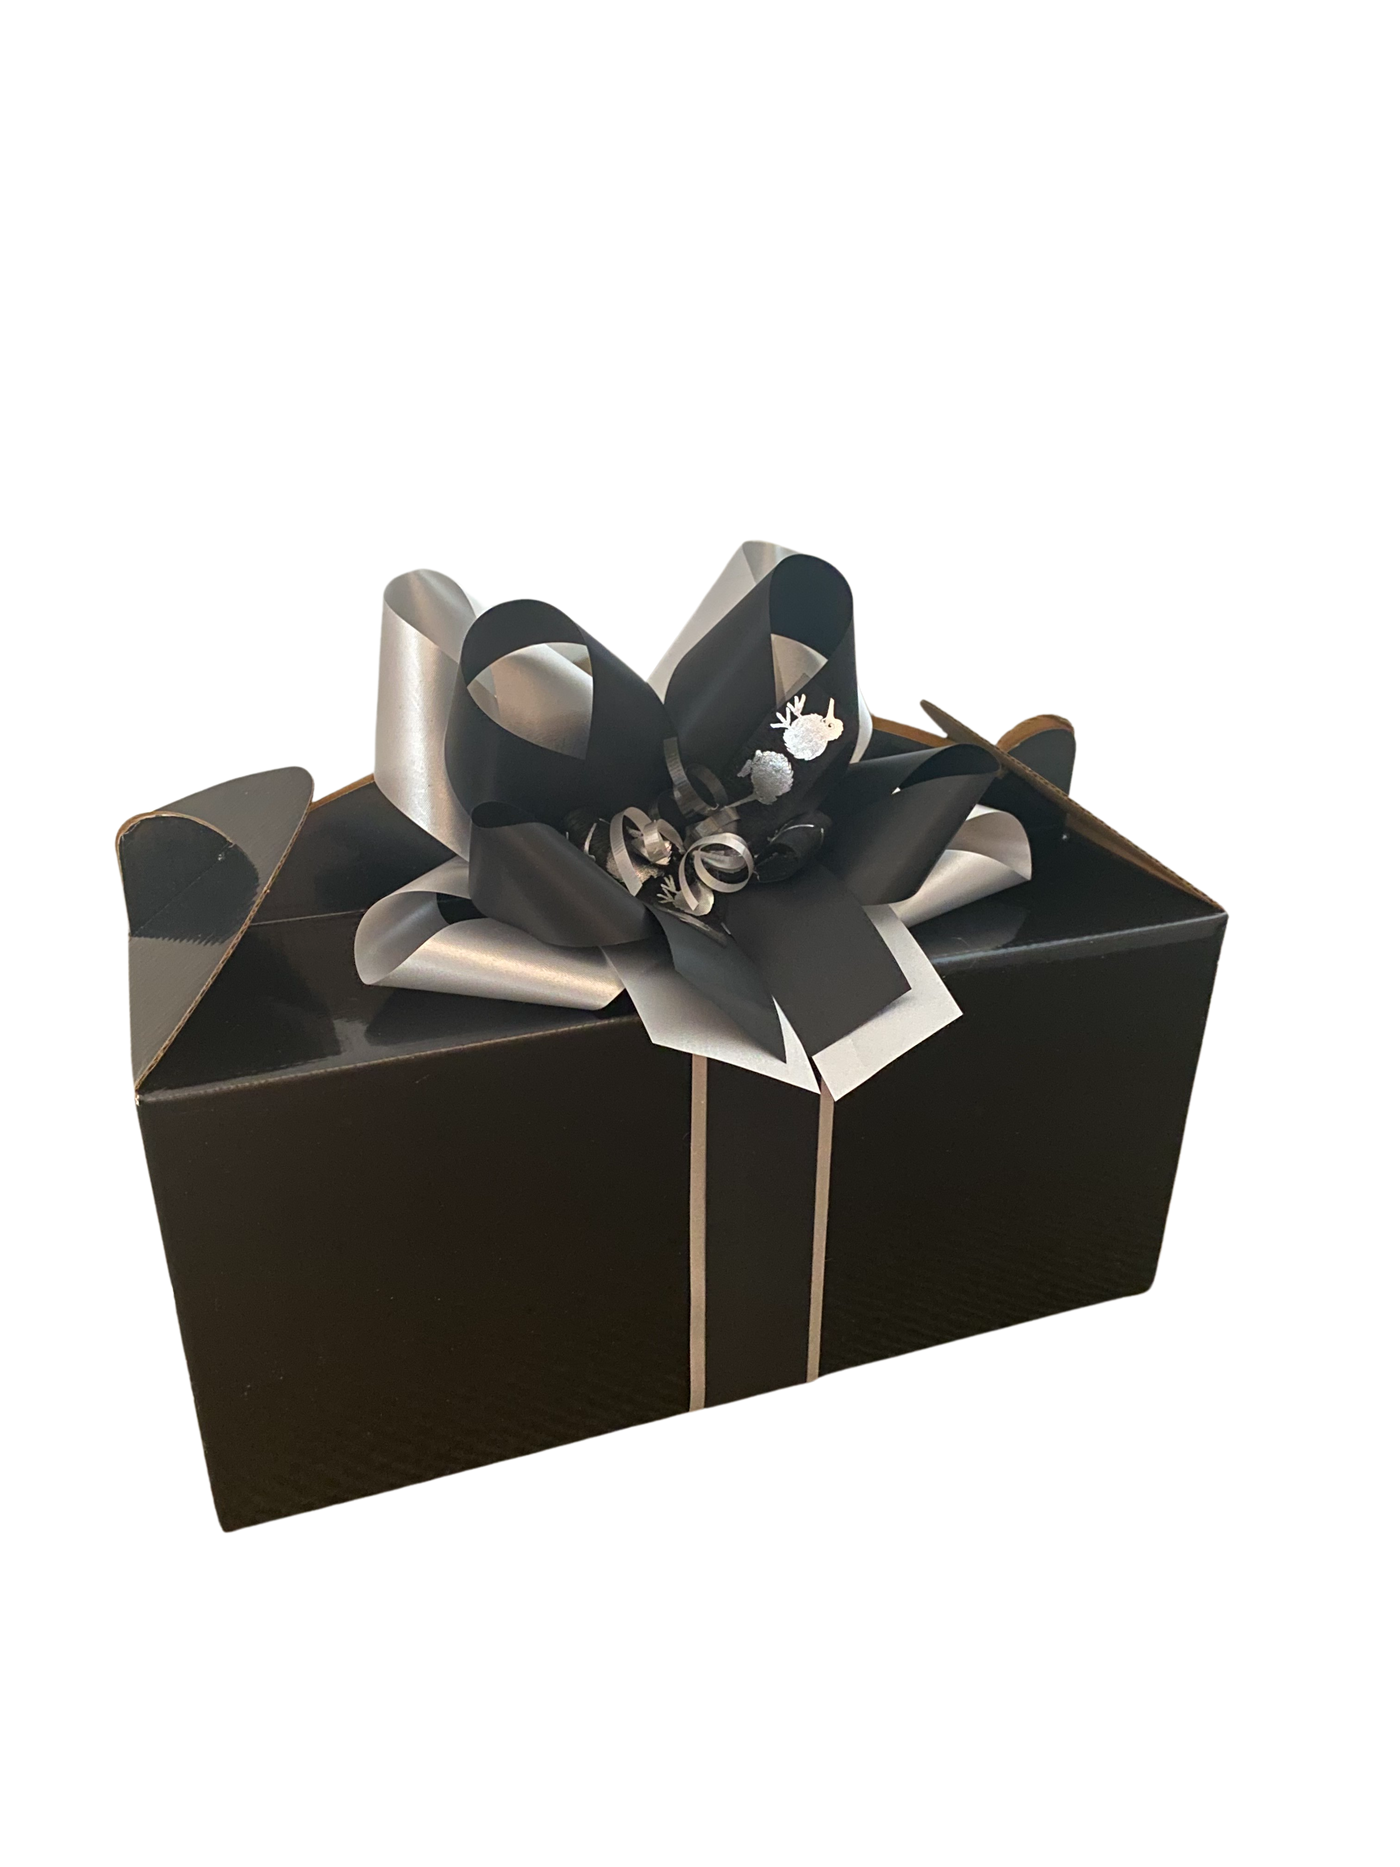 The Kiwiana Gift Box